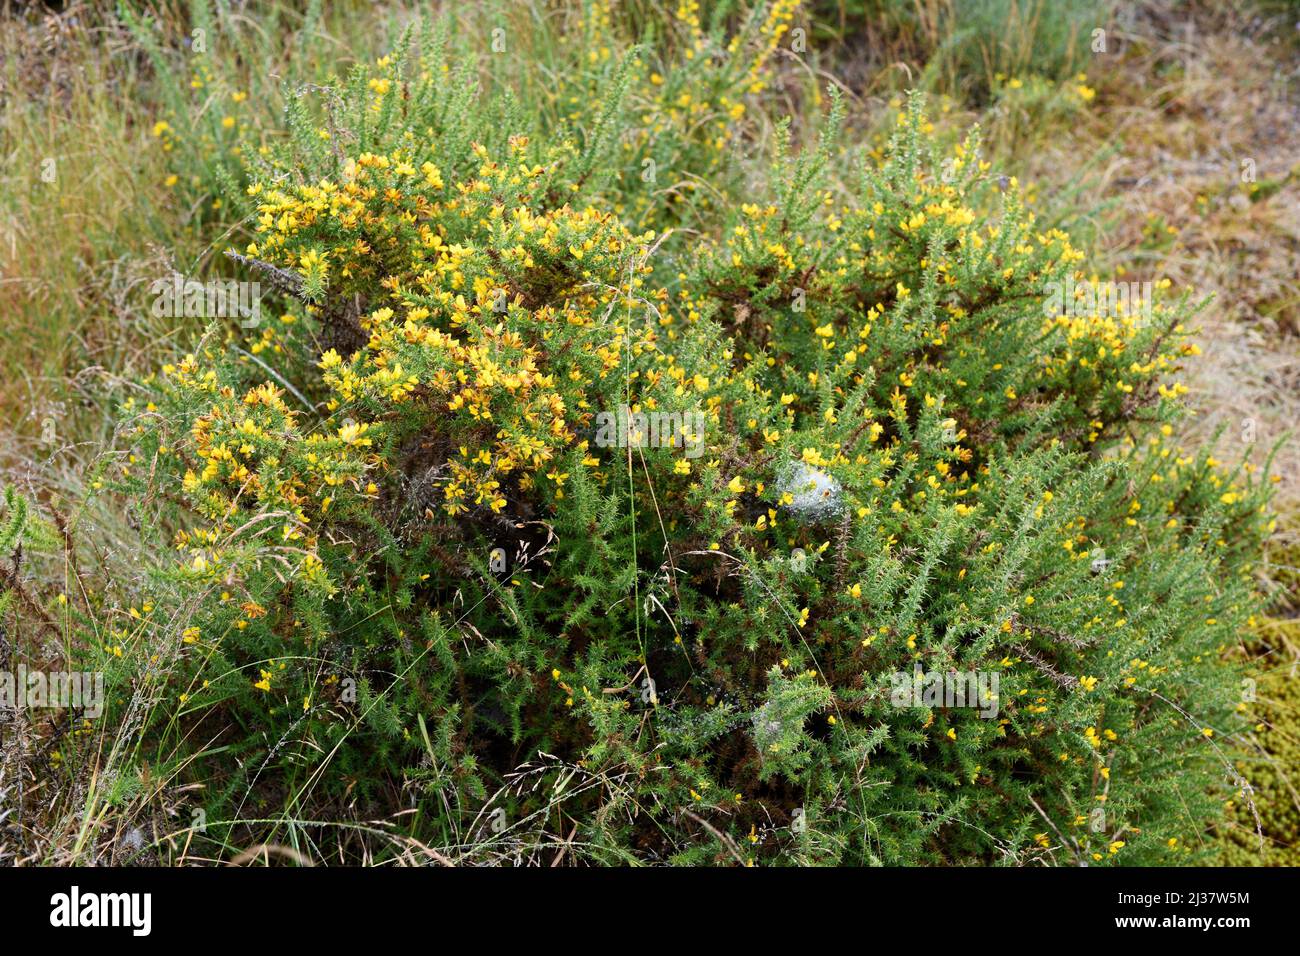 Il gorse (Ulex europaeus) è un arbusto spinoso originario dell'Europa occidentale (coste atlantiche). Questa foto è stata scattata a Vilarinho Seco, Portogallo. Foto Stock